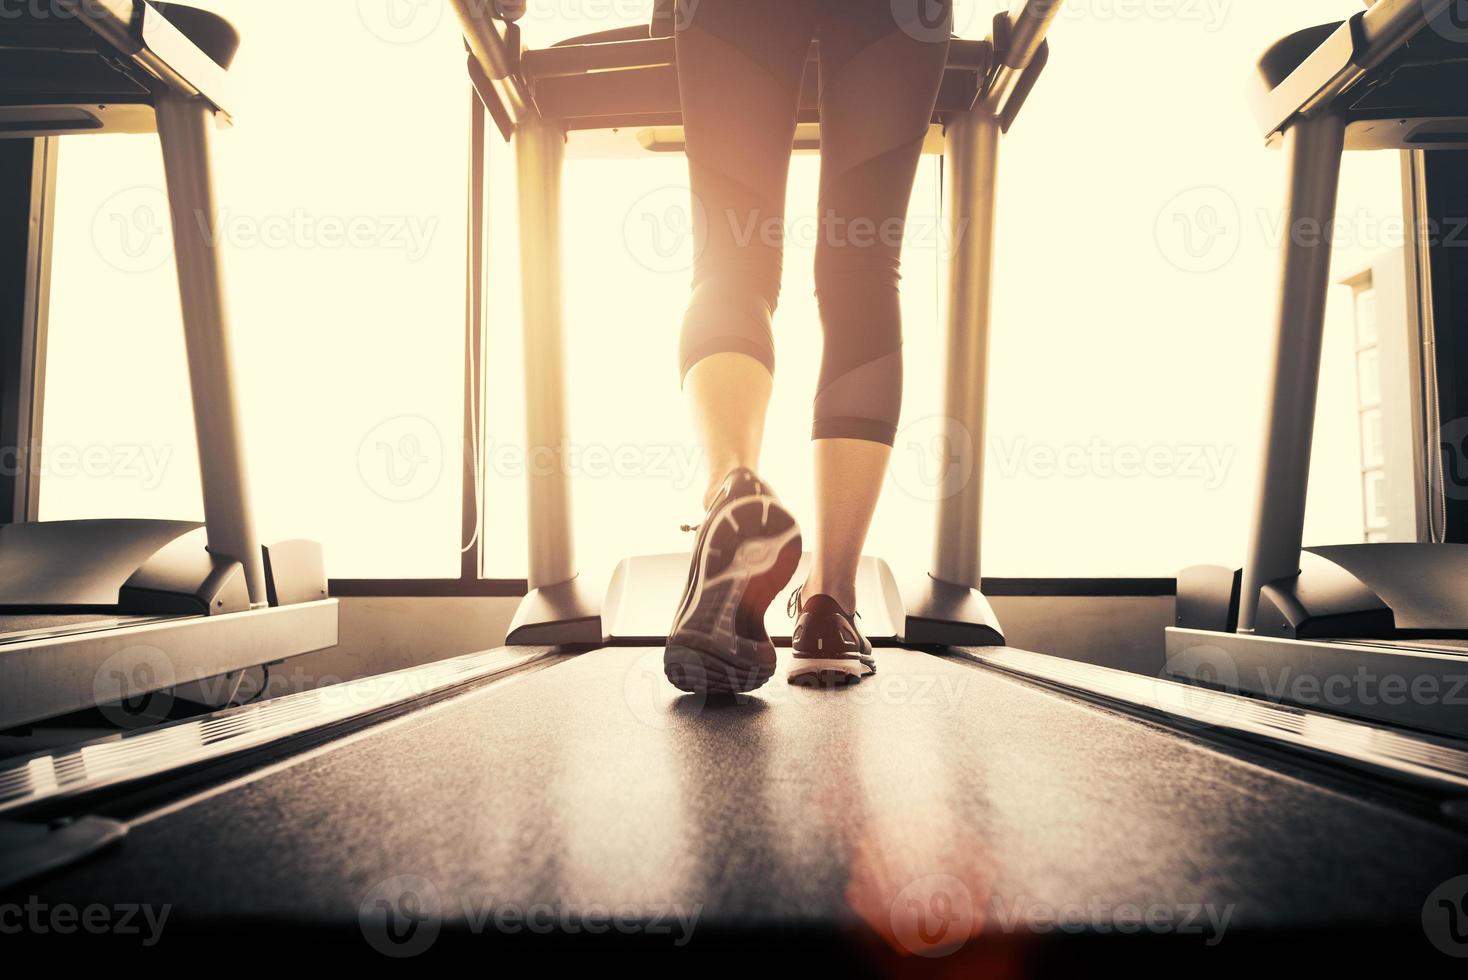 parte inferior do corpo na parte das pernas da garota fitness correndo na máquina de corrida foto